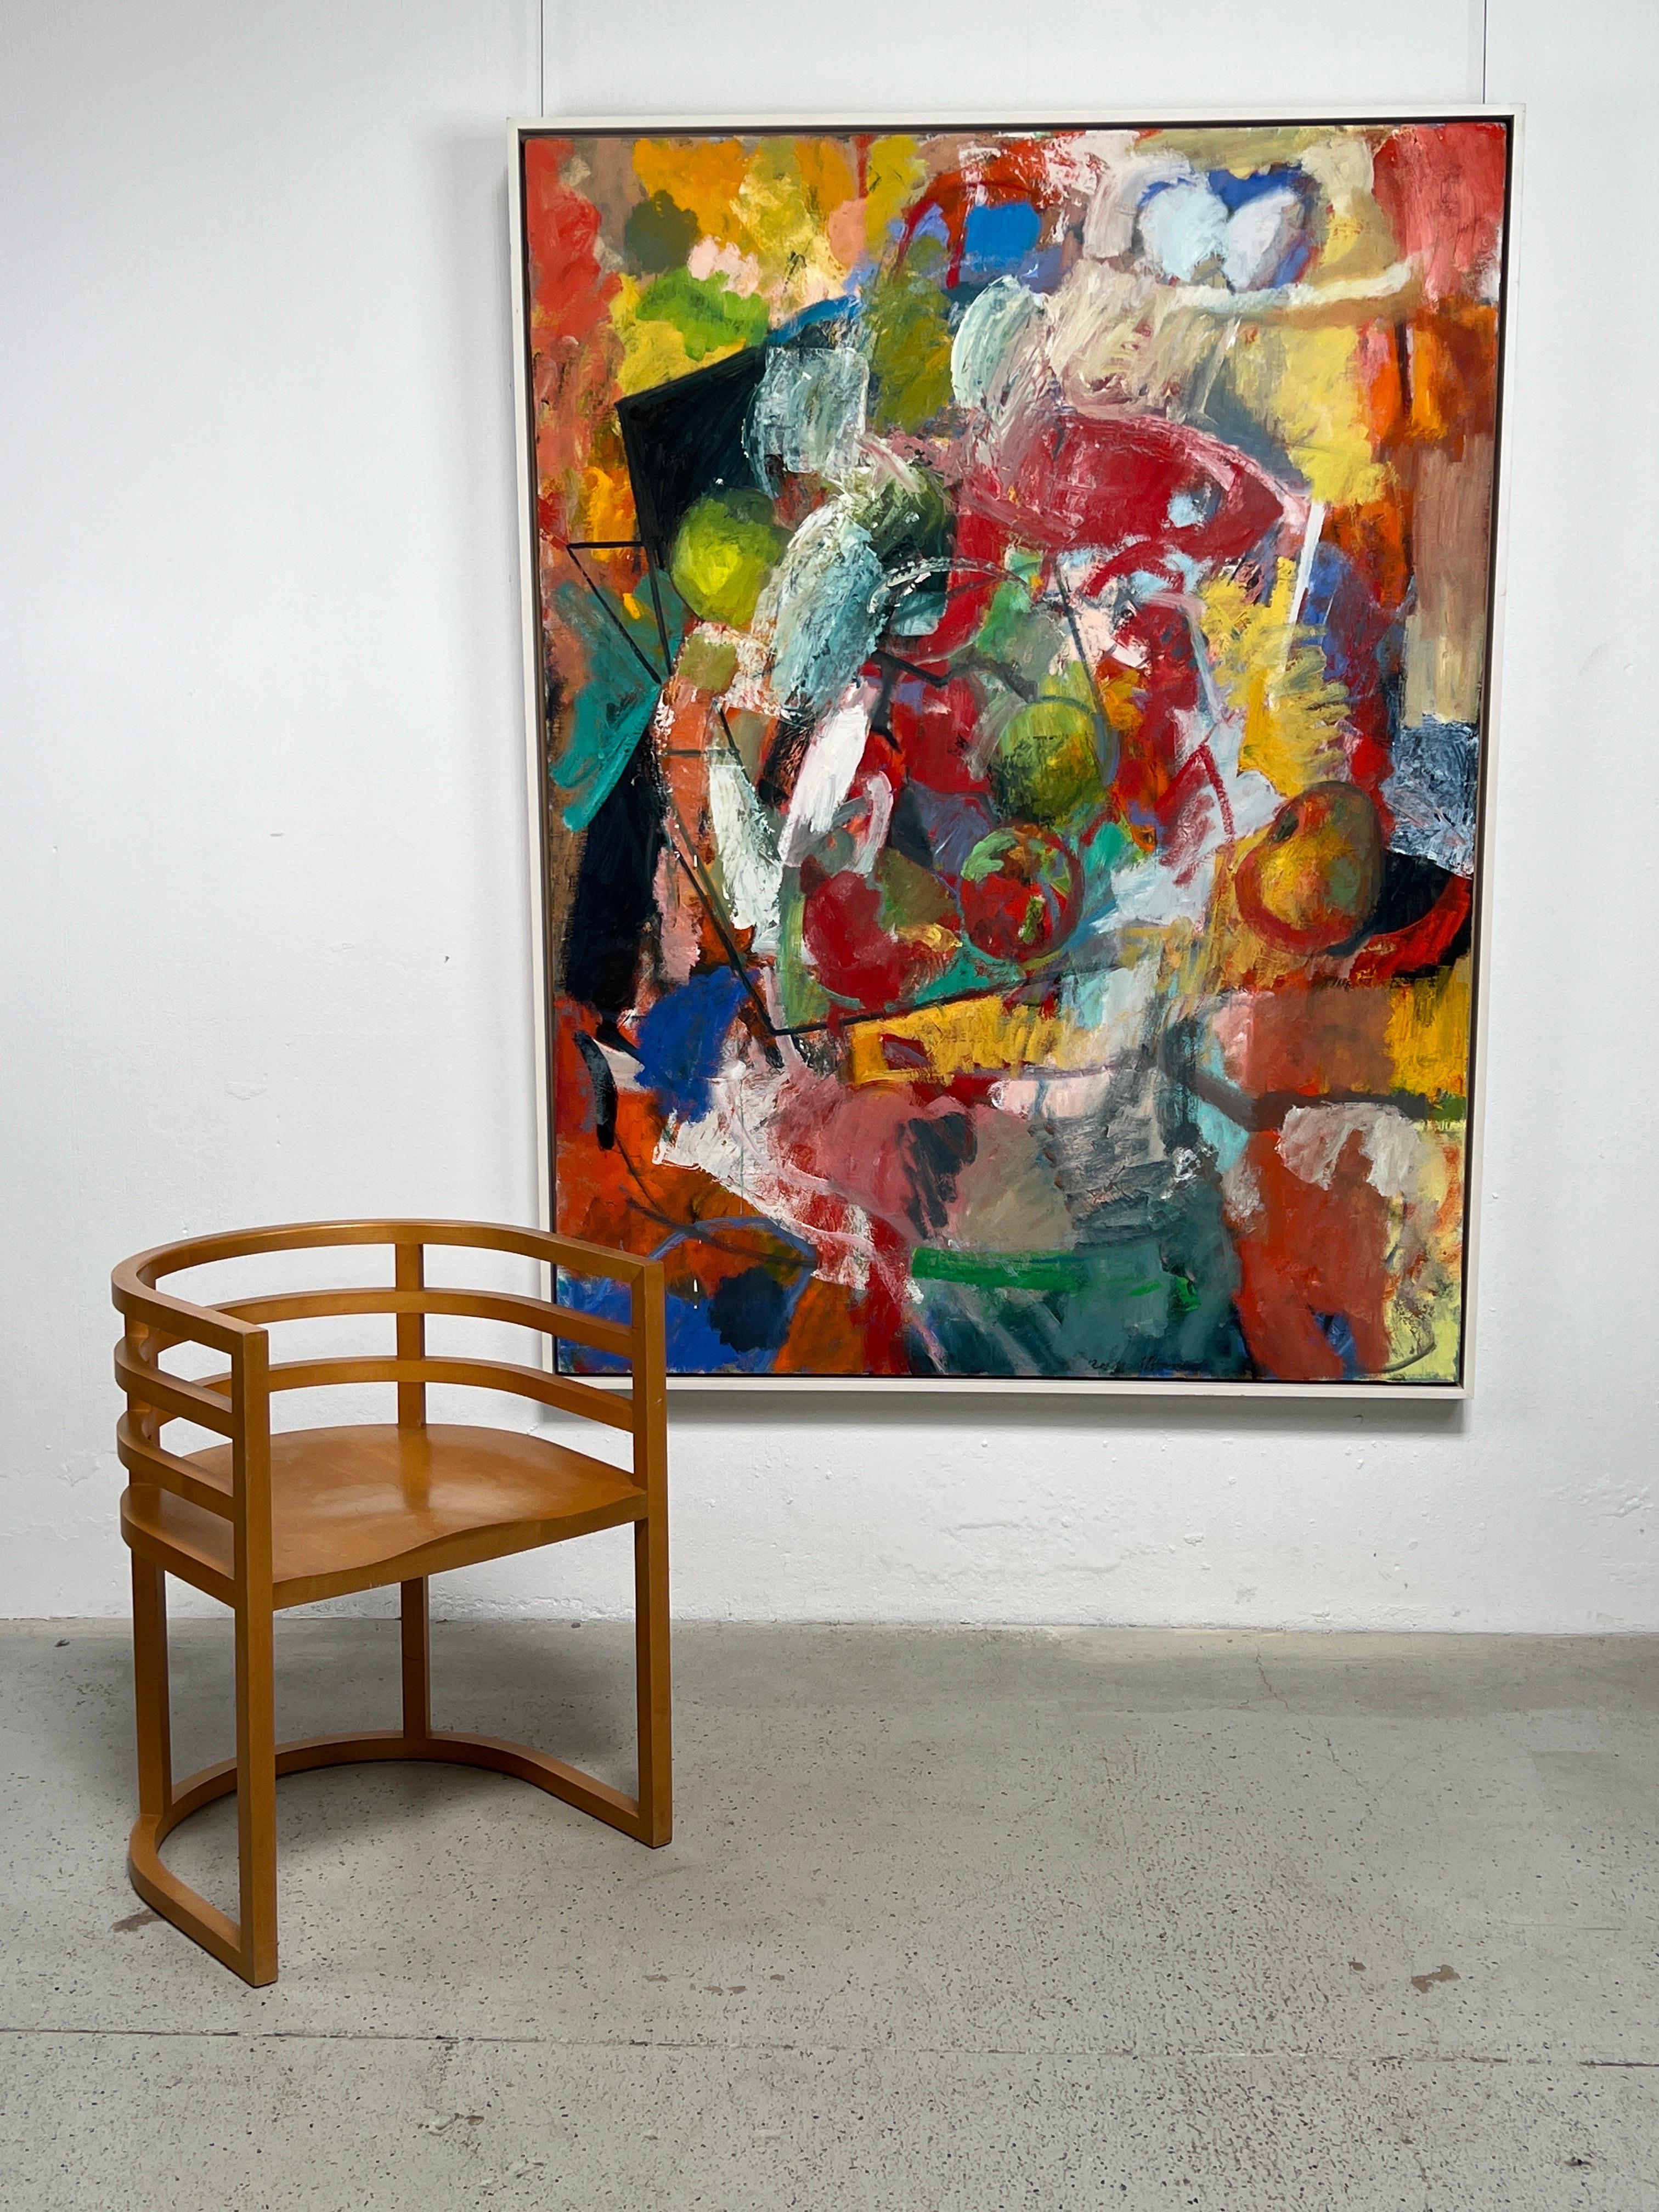 Paul Russotto (Amerikaner, 1941-2014) entwickelte seine künstlerische Perspektive in New York City während der Nachkriegszeit der abstrakten expressionistischen Malerei, die als New York School bekannt wurde. Ausgehend von seiner Kenntnis der